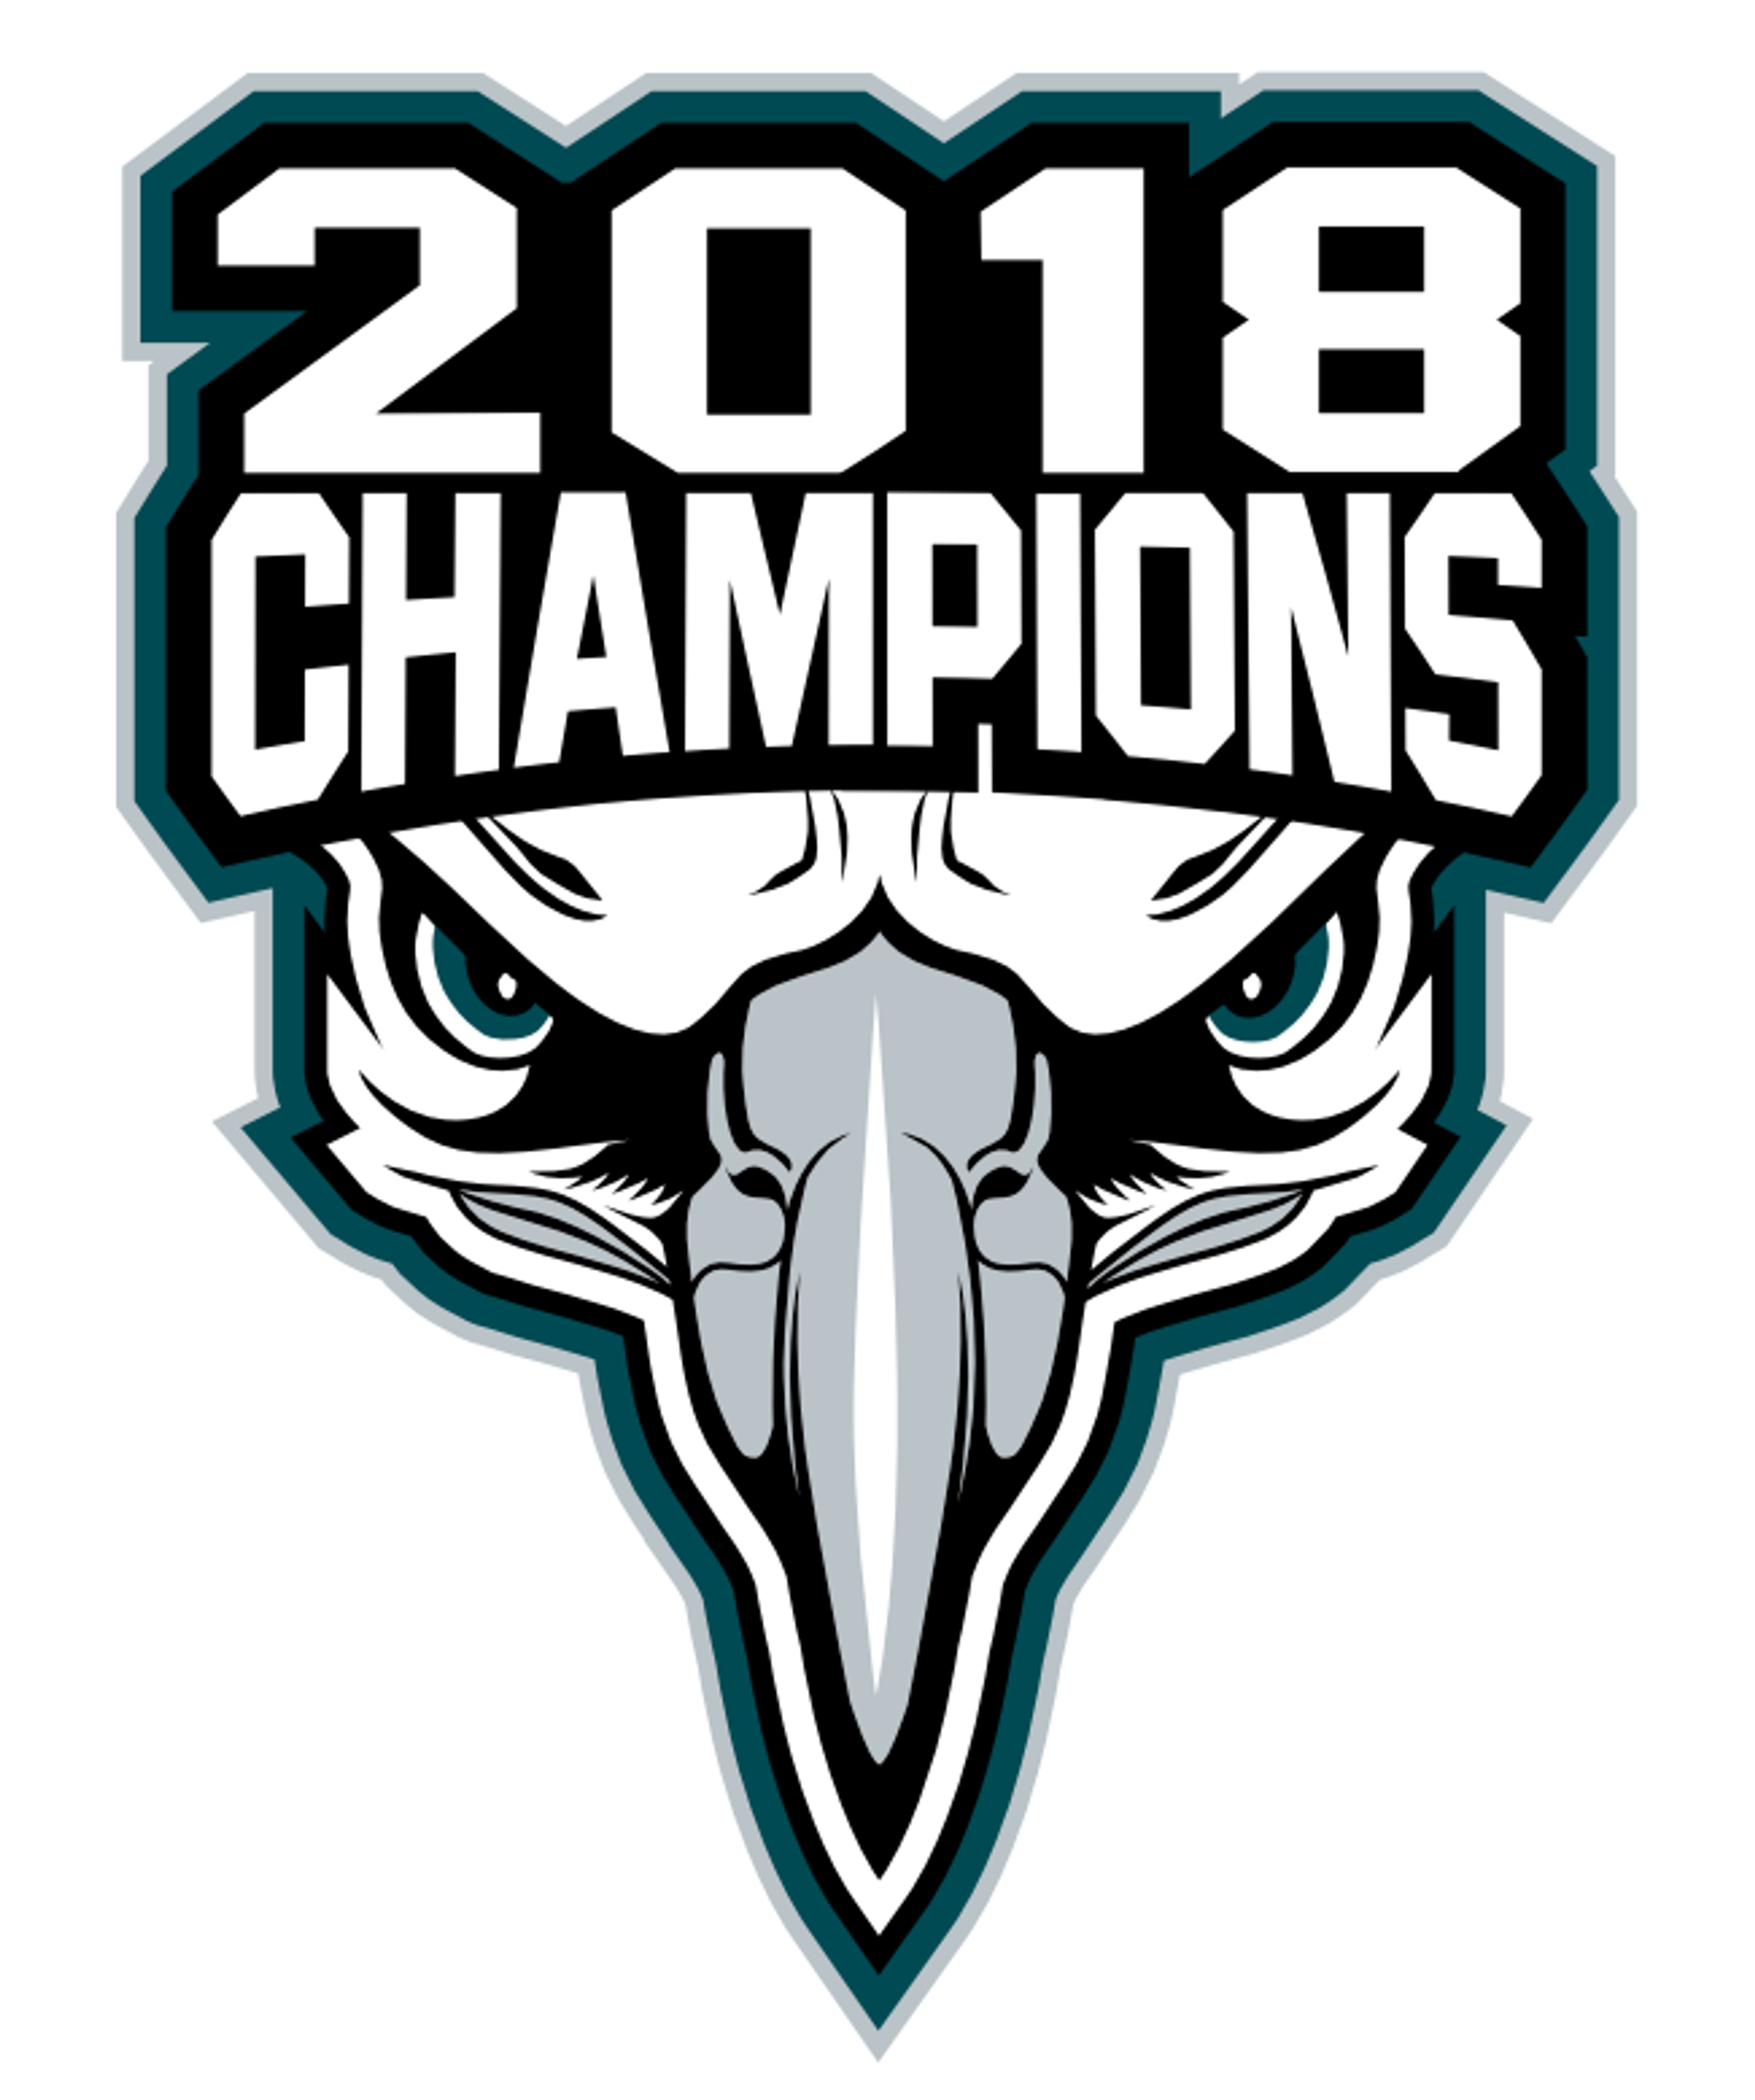 2018 Champions